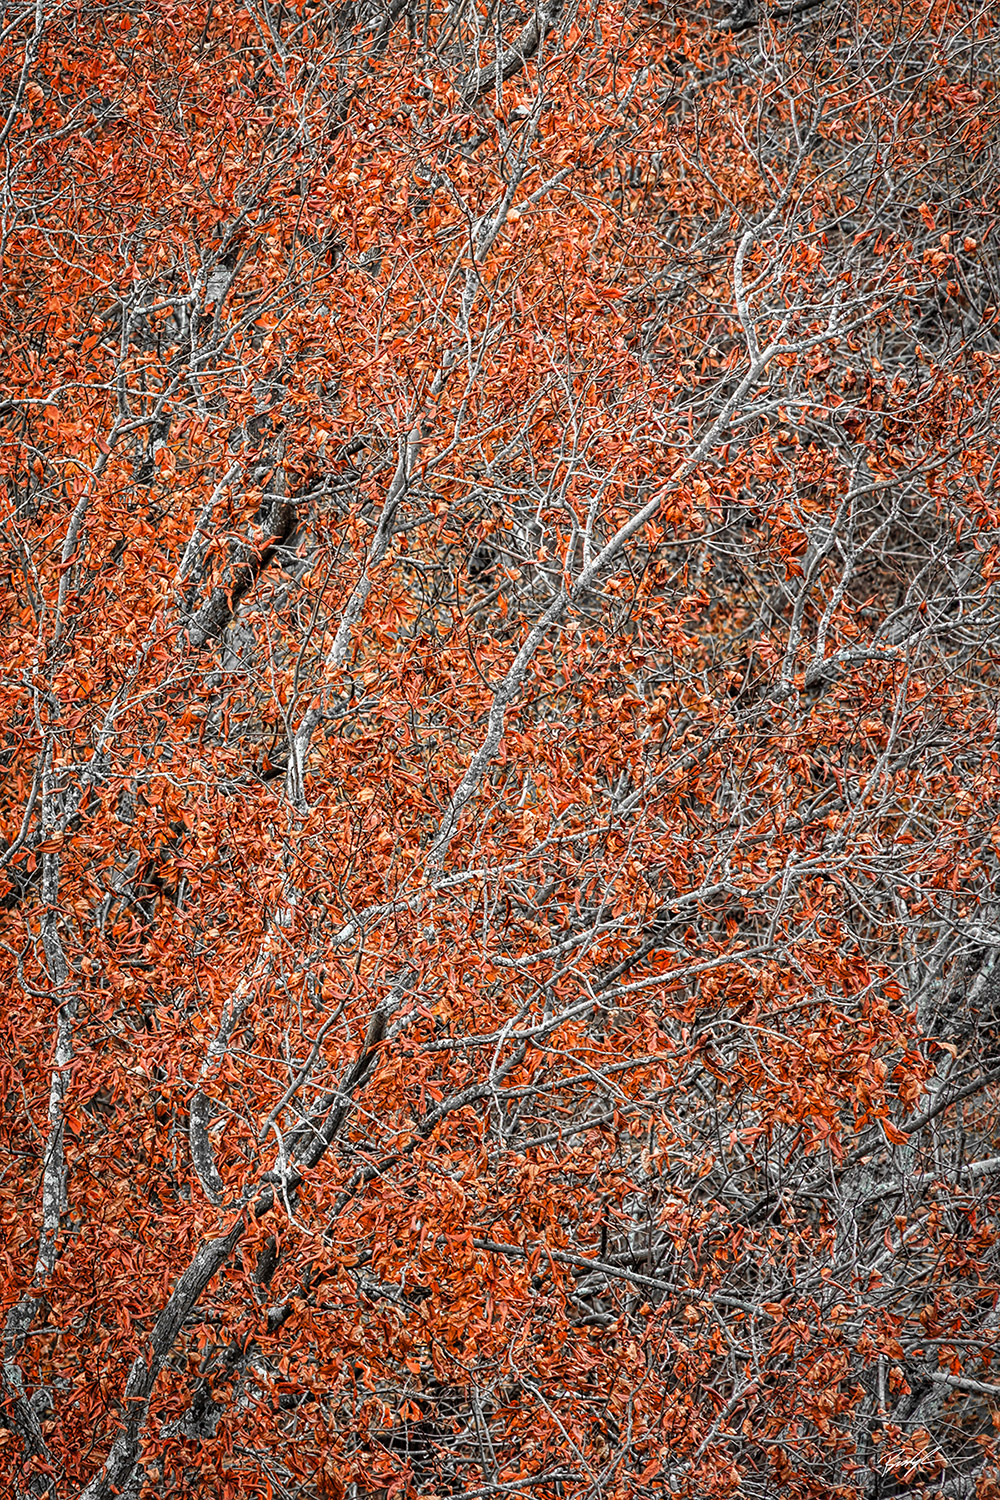 Burnt Orange Autumn Foliage Shawnee National Forest Illinois